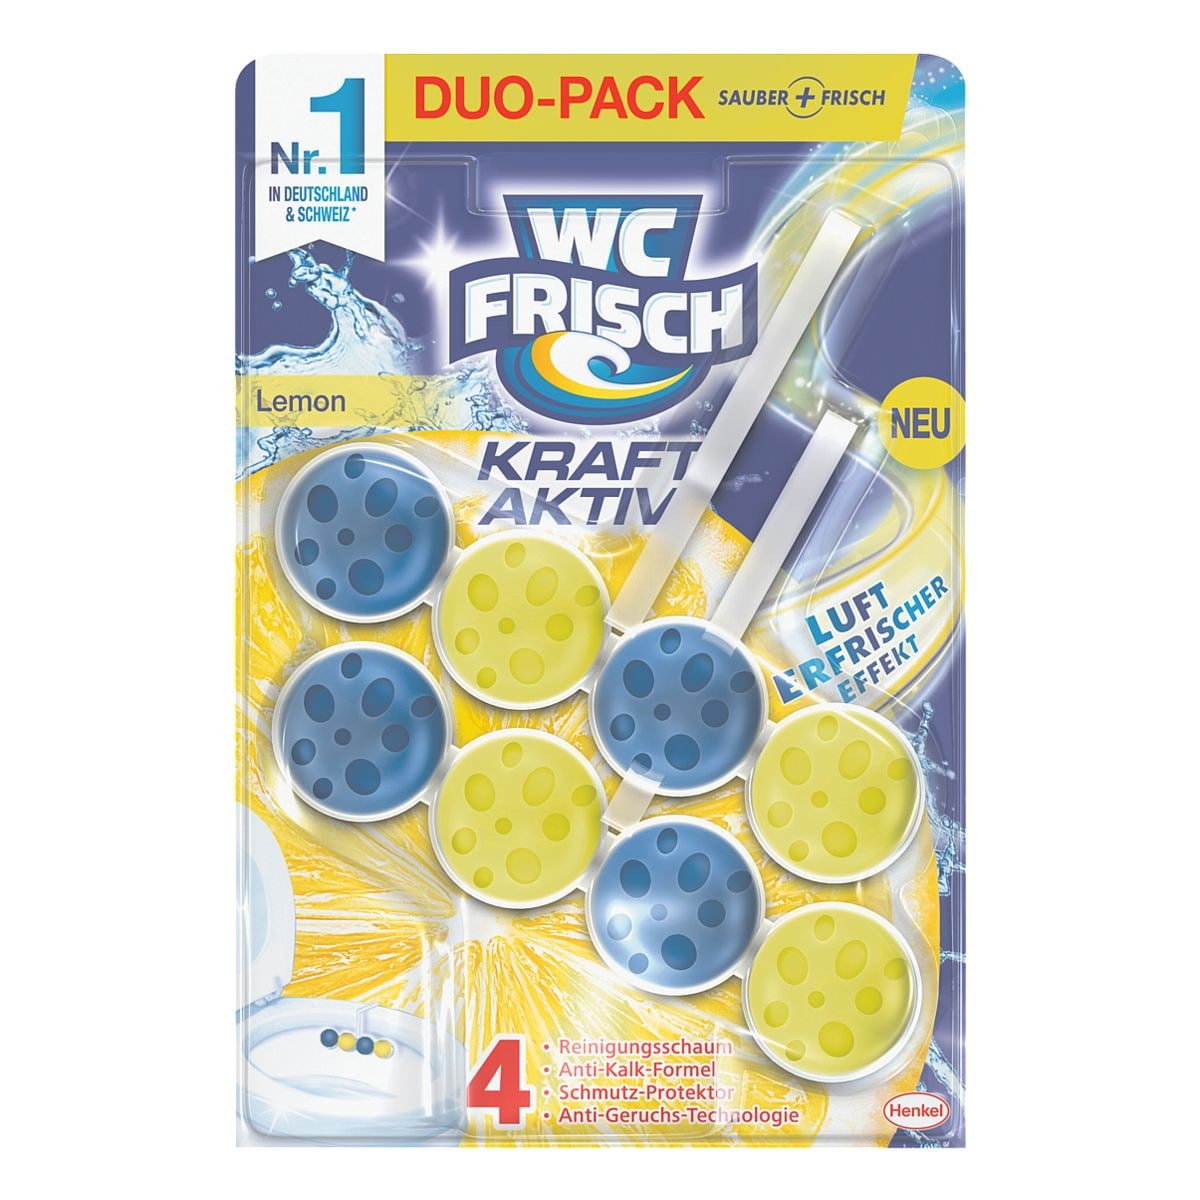 WC FRISCH Duo-Pack WC-Duftspler WC Frisch Kraft Aktiv Lemon